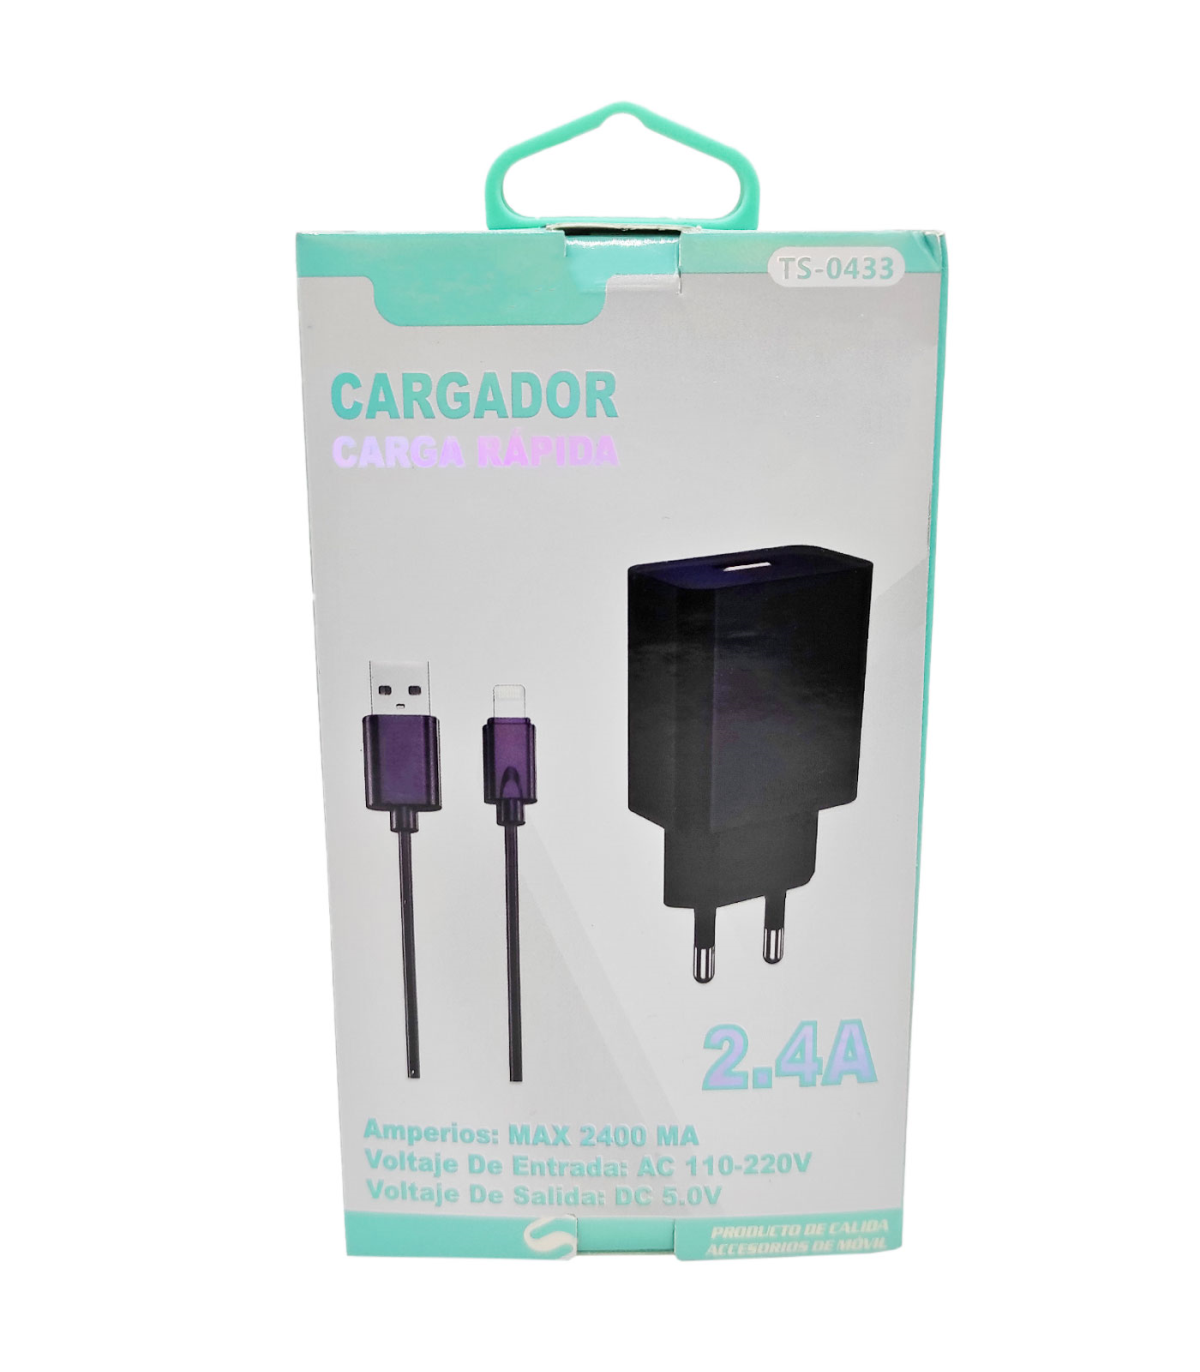 Tradineur - Cargador de móvil compatible con iOS, 2.4A, cable de 100 cm,  carga rápida, enchufe de corriente, smartphone, tablet